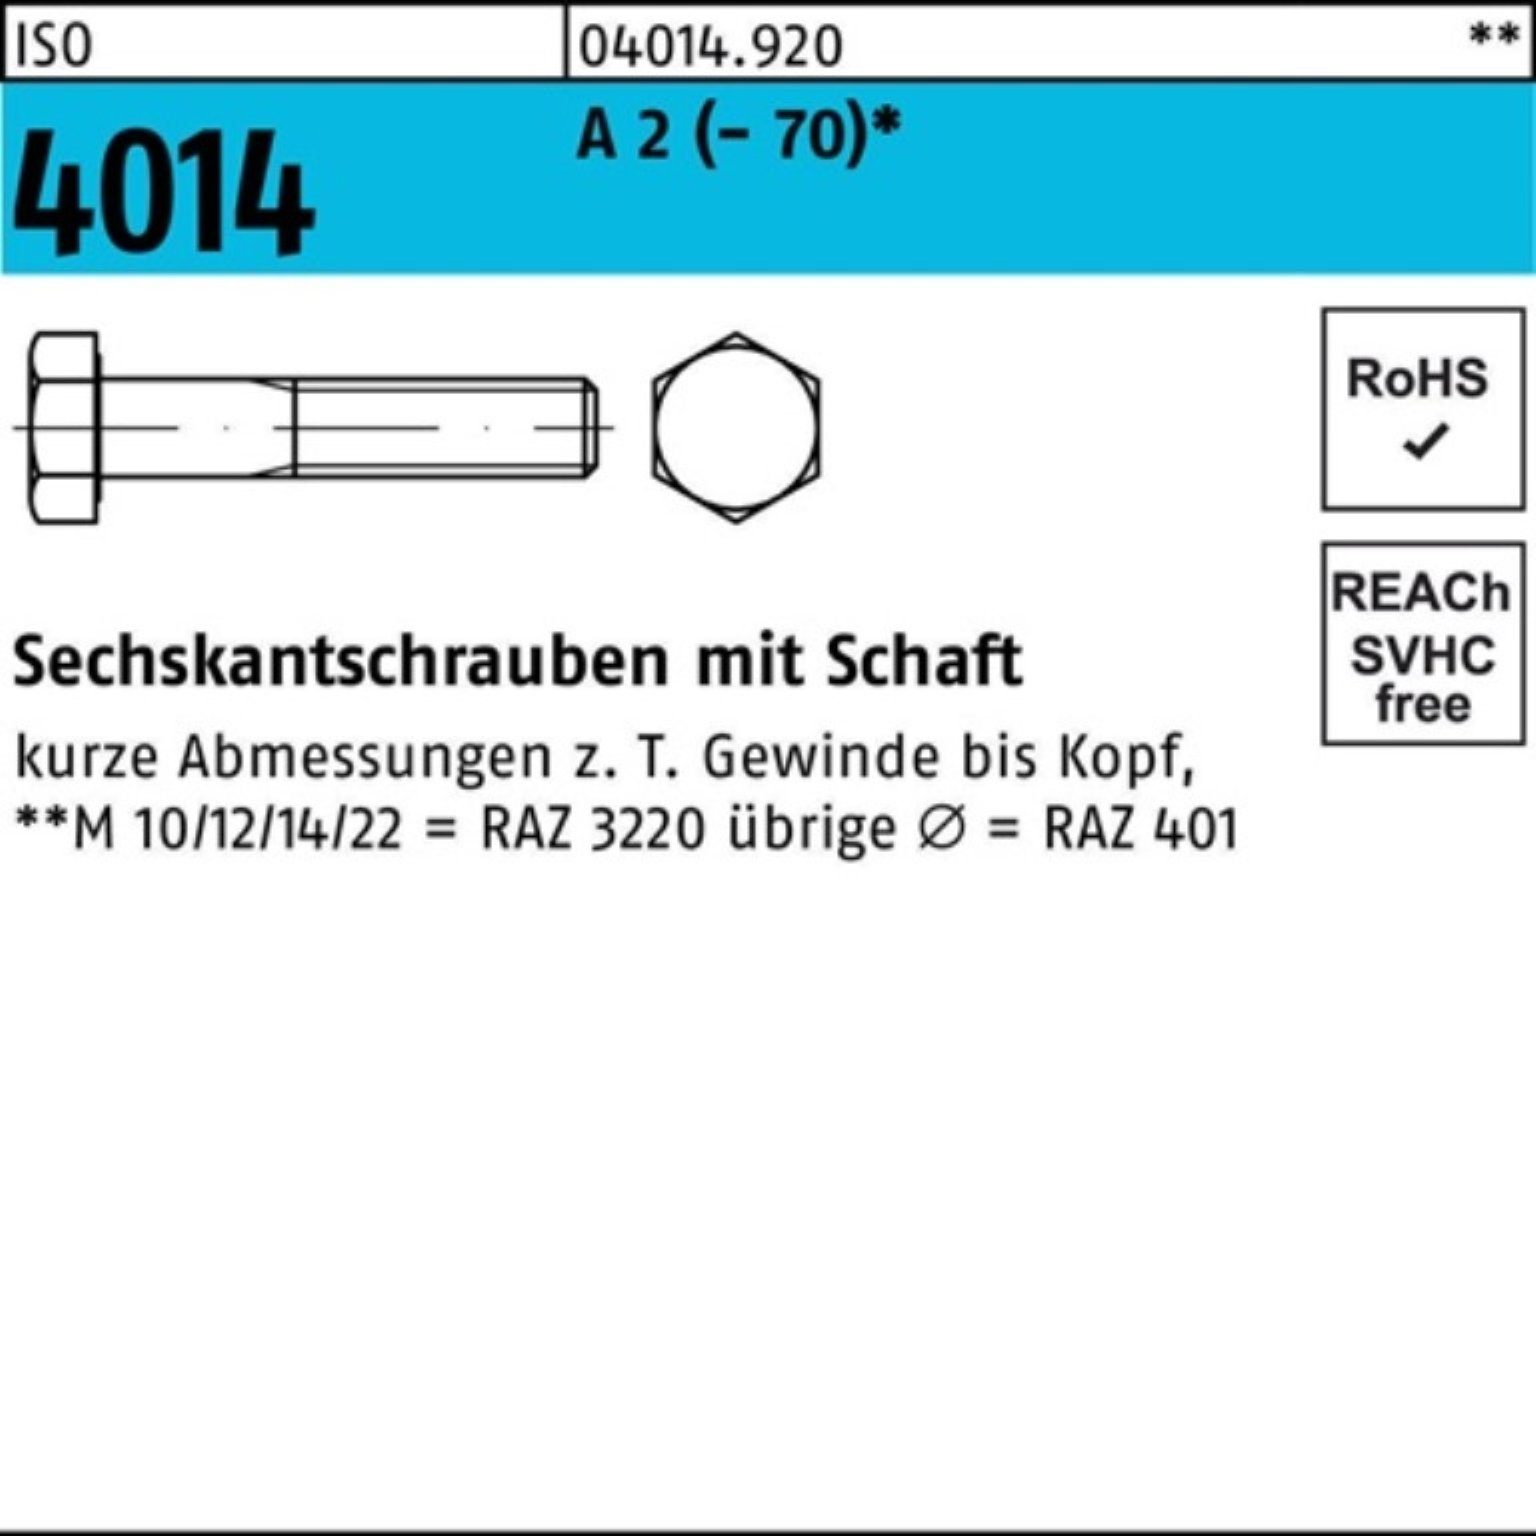 Bufab Sechskantschraube 100er Pack Sechskantschraube ISO 4014 Schaft M24x 250 A 2 (70) 1 St